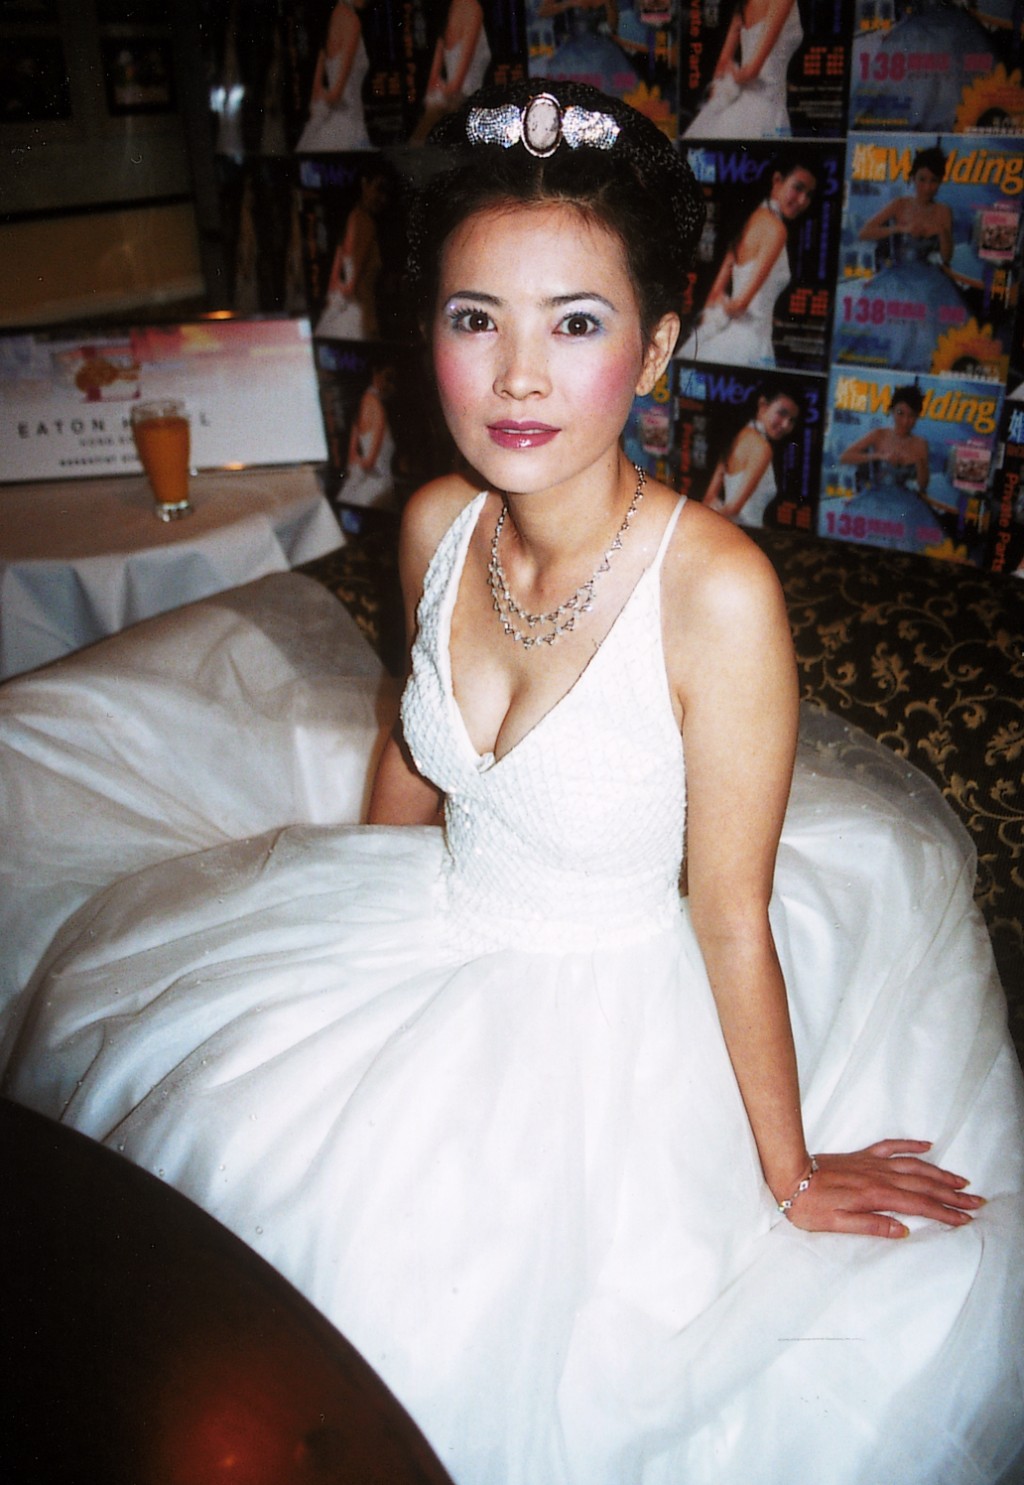 蓝洁瑛于早前香港网民投选的「五官最完美女星」亦榜上有名。